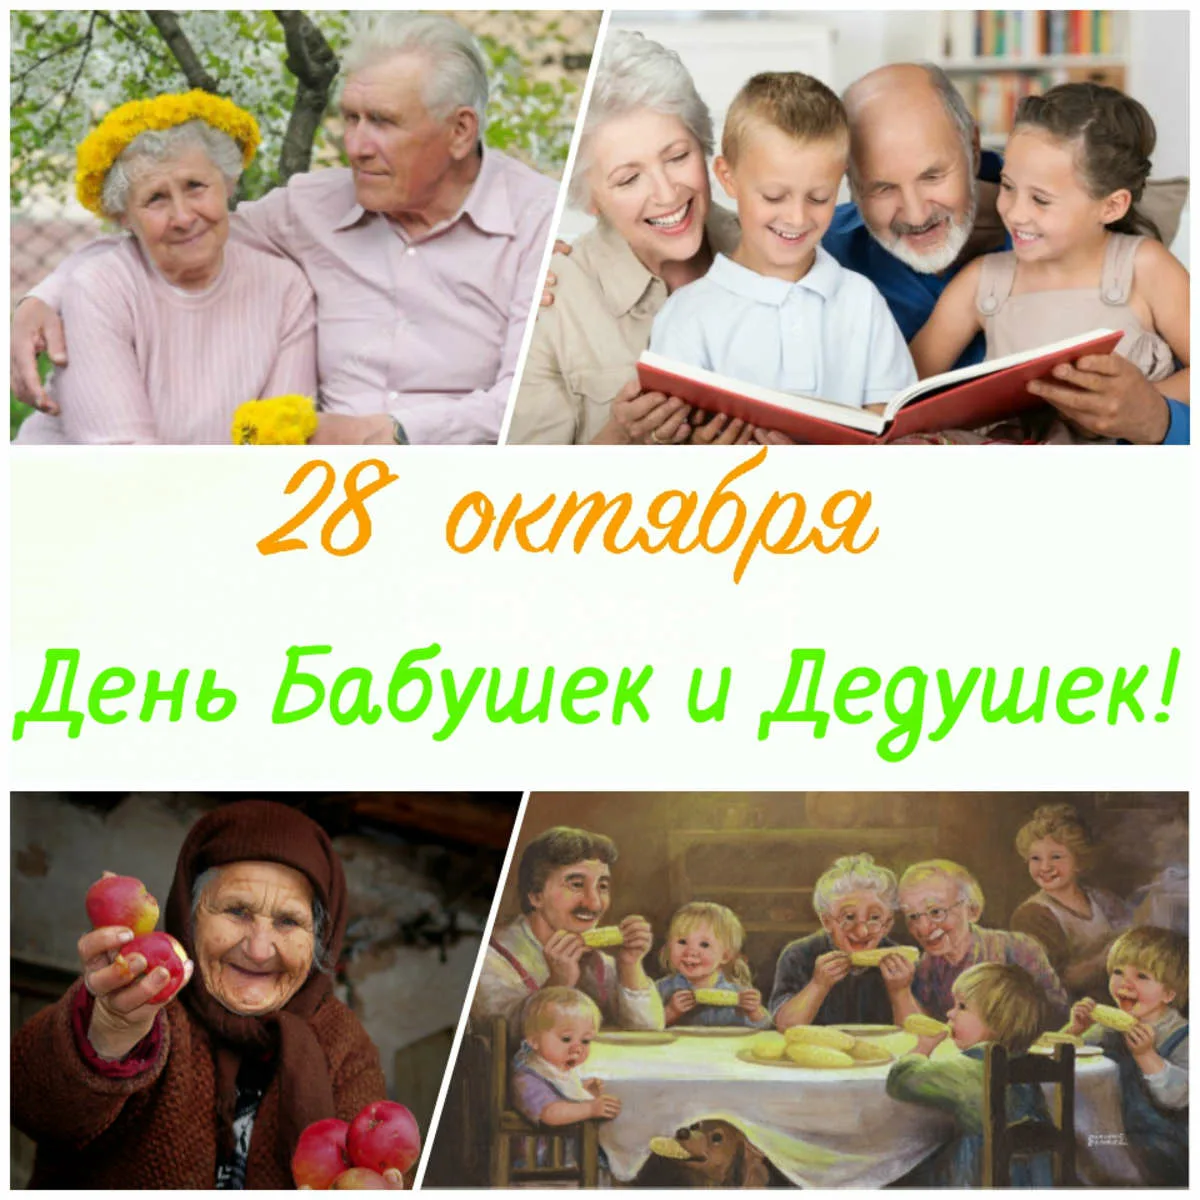 Международный день бабушек картинки. День бабушек и дедушек в России. С днём бабушек и дедушек. С днём бабушек и дедушек открытки. 28 Октября – день бабушек и дедуше.